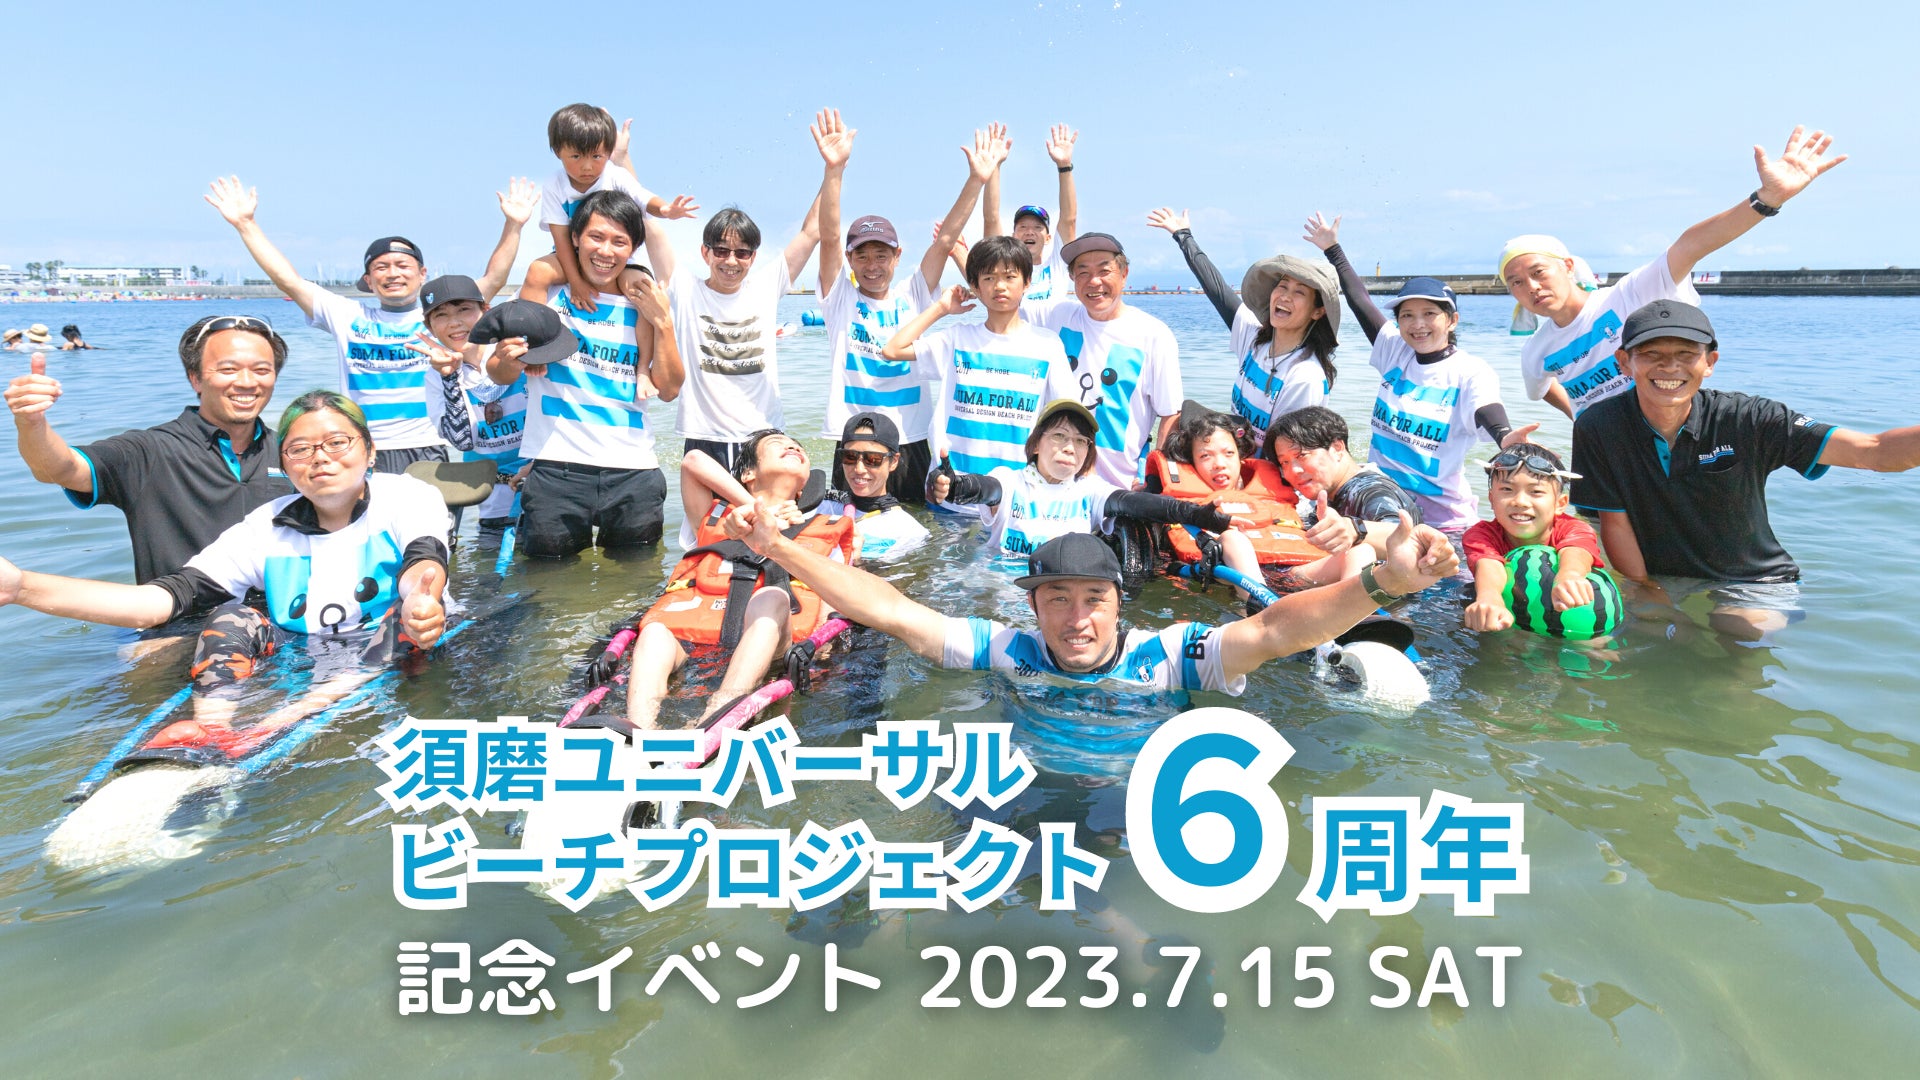 県内外の麻雀愛好家が68名参加する『松山城下健康マージャン交流大会』が4年ぶりに開催されます。【愛媛県松山市】